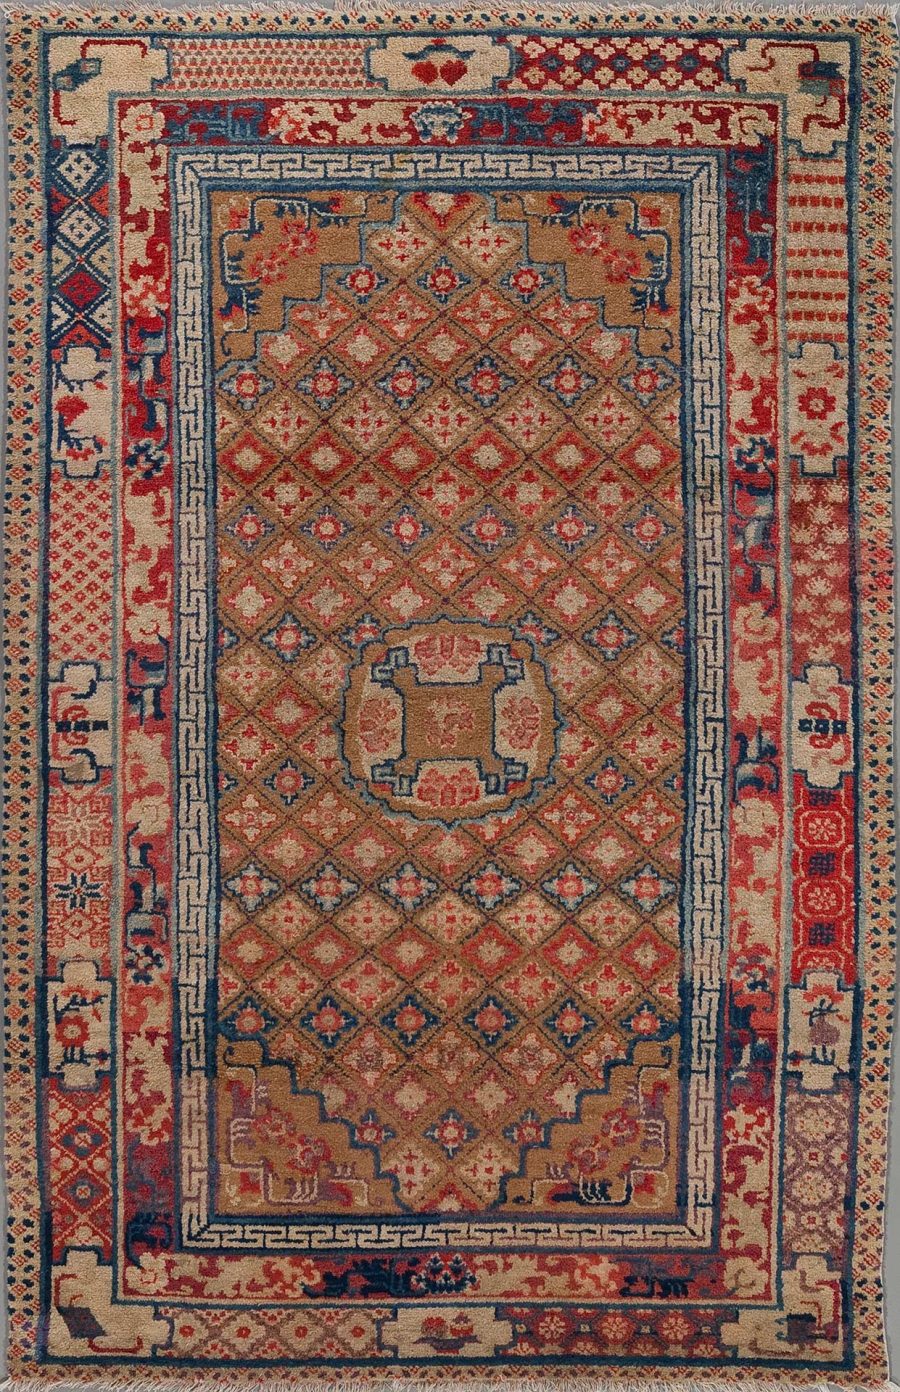 Antiker handgeknüpfter orientalischer Teppich mit abstrakten und geometrischen Mustern in Rottönen, Blau, Beige und Akzenten in anderen Farben.